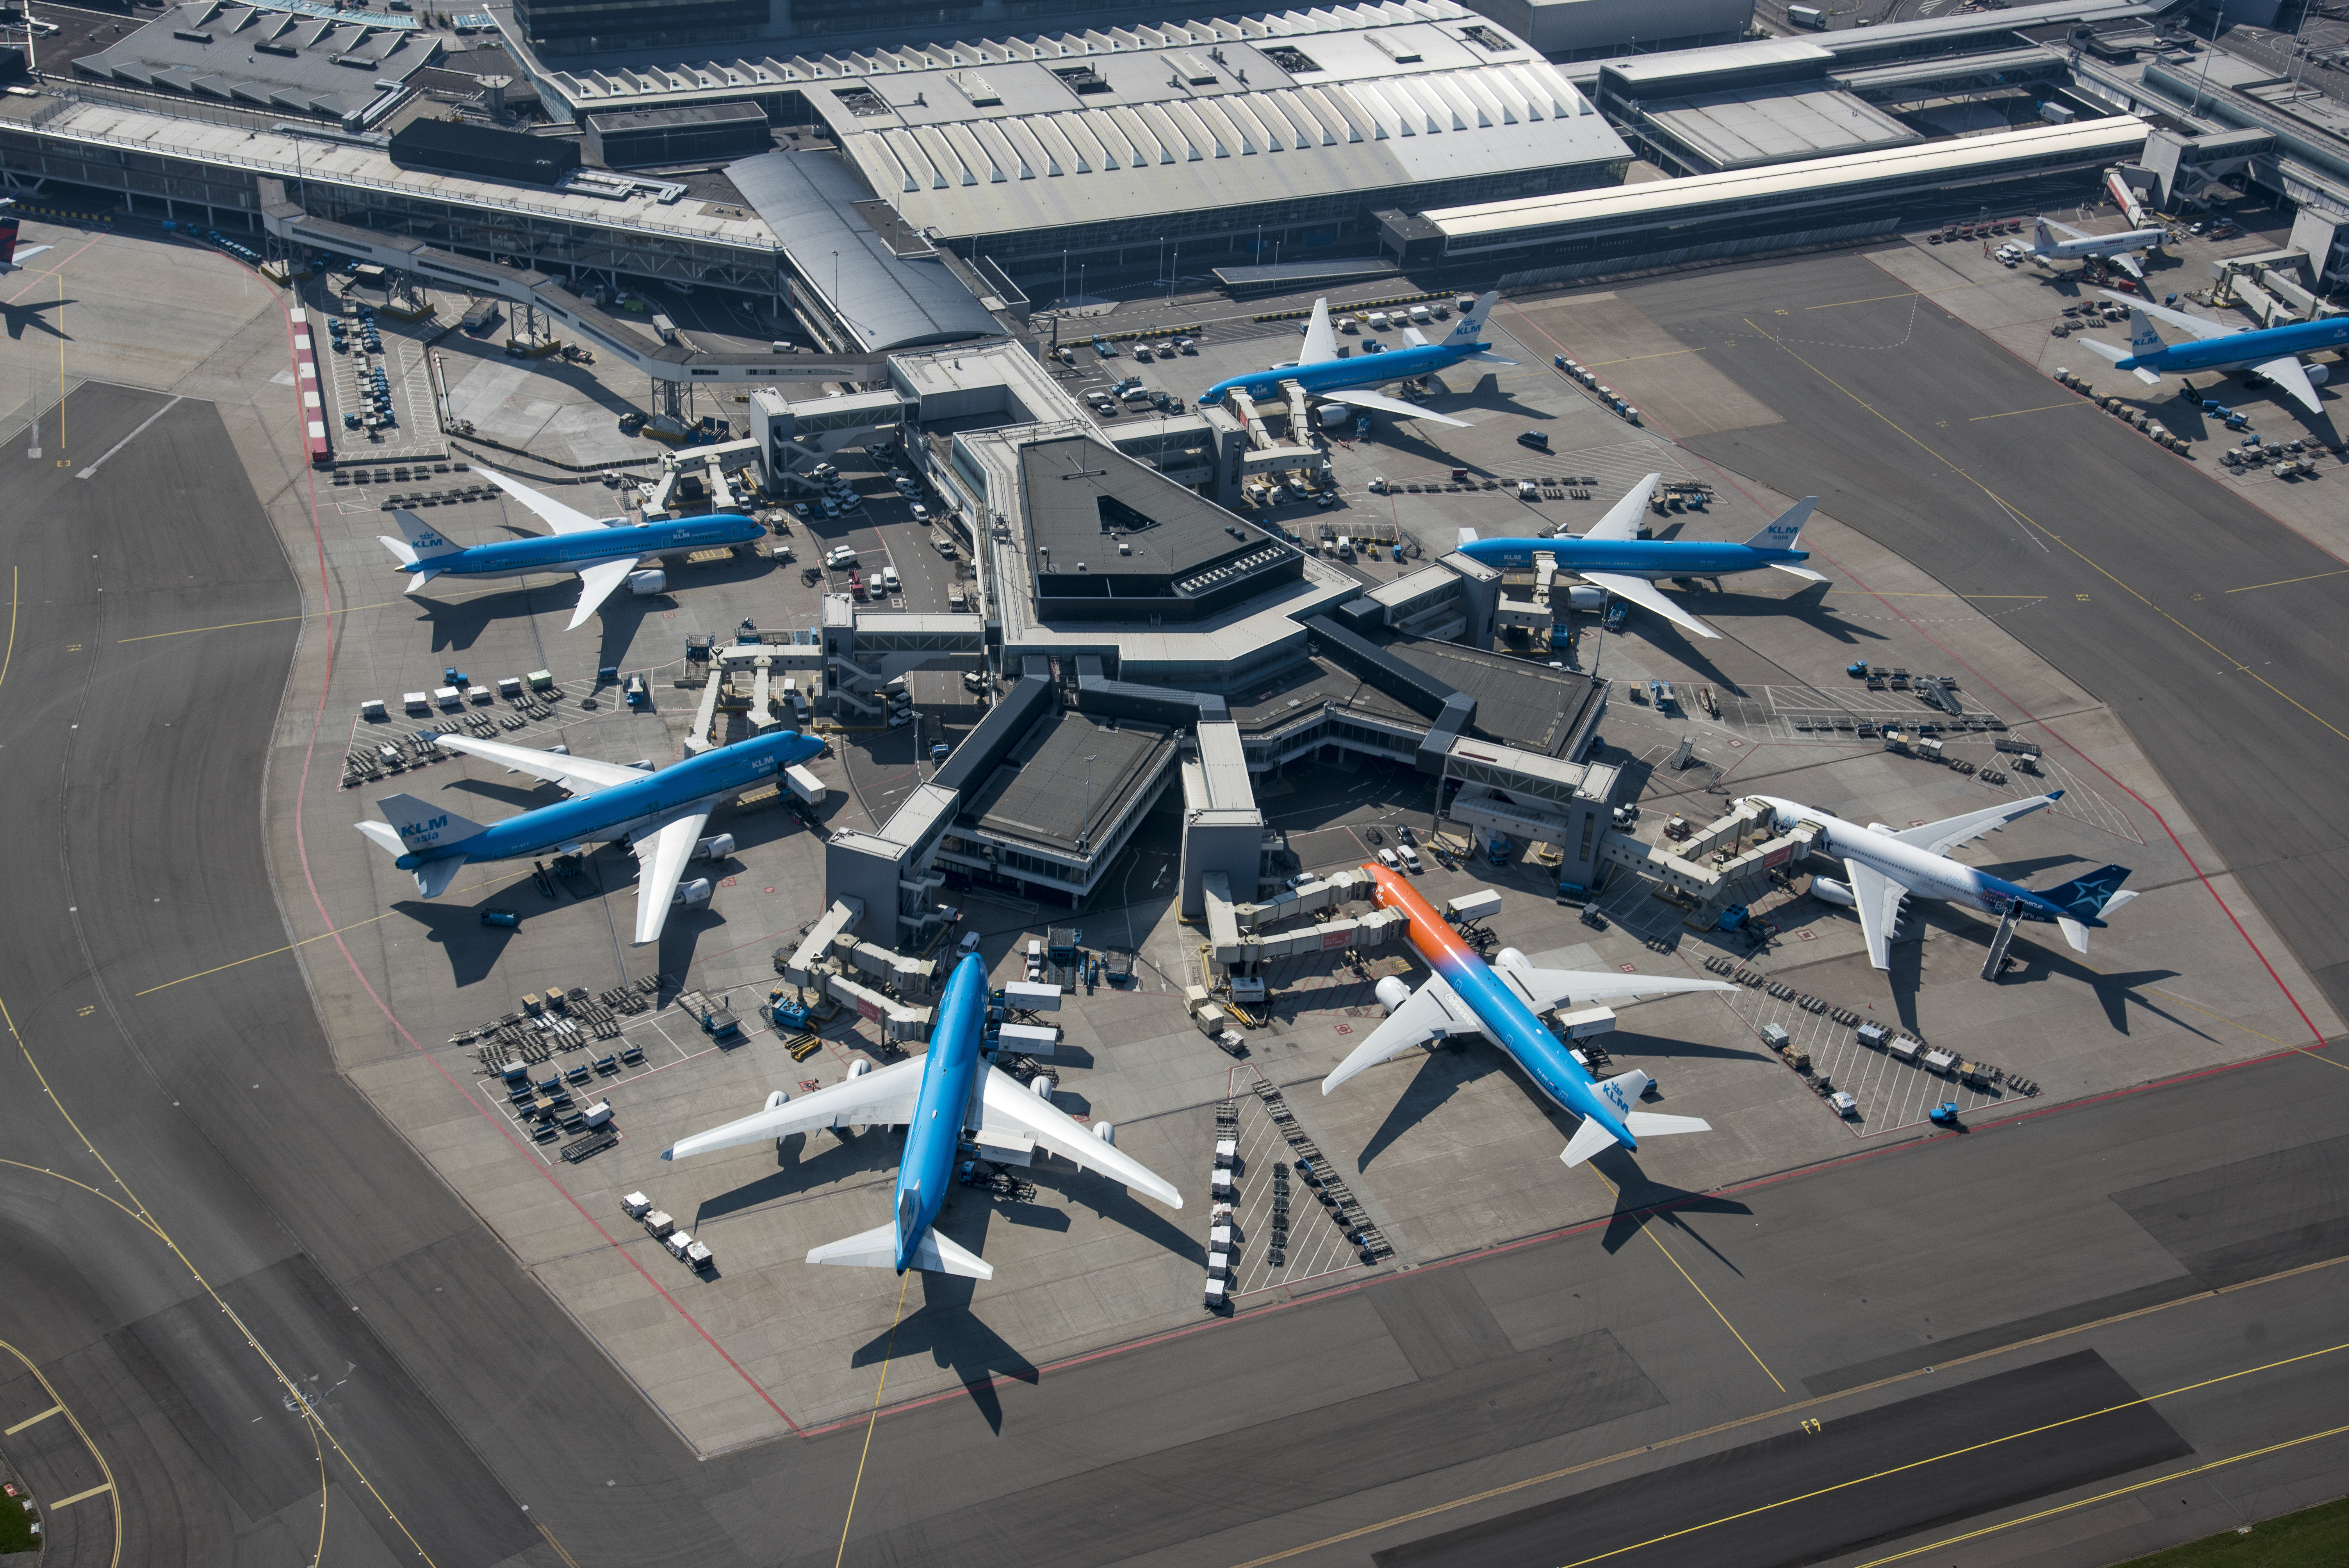 Schiphol dreigt volgend jaar al 500 duizend vluchtbewegingen te halen. De luchthaven heeft met de provincie, gemeenten en omwonenden afgesproken dat het vliegveld tot 2020 niet verder zou groeien dan een half miljoen vluchtbewegingen.